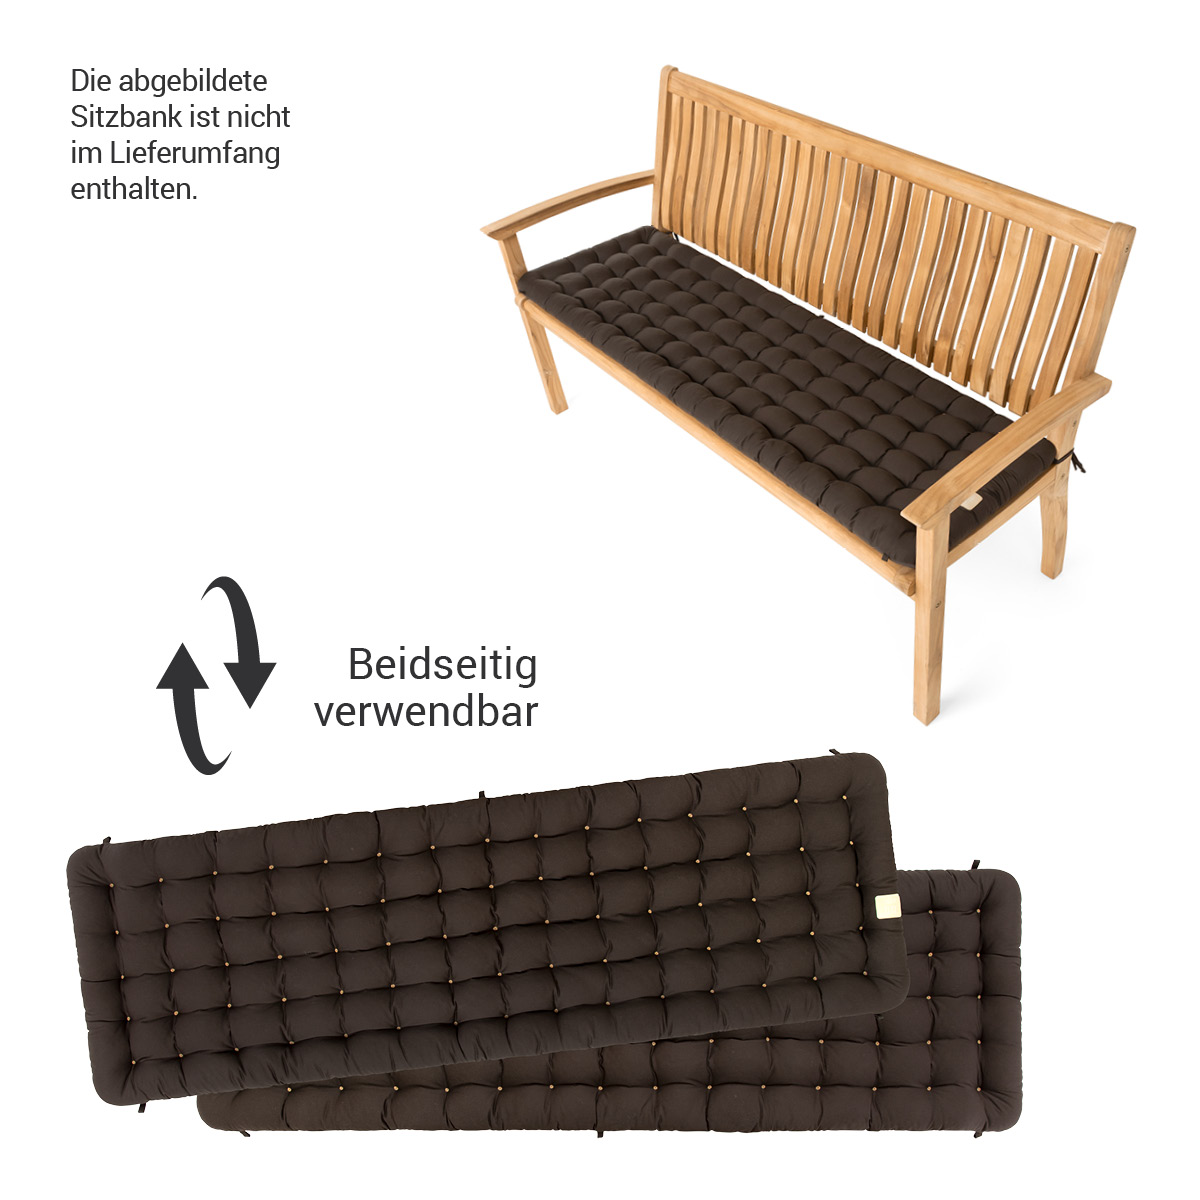 HAVE A SEAT Living Gartenbank Auflage braun / dunkelbraun | beidseitig verwendbar, die abgebildete Gartenbank ist nicht im Lieferumfang enthalten